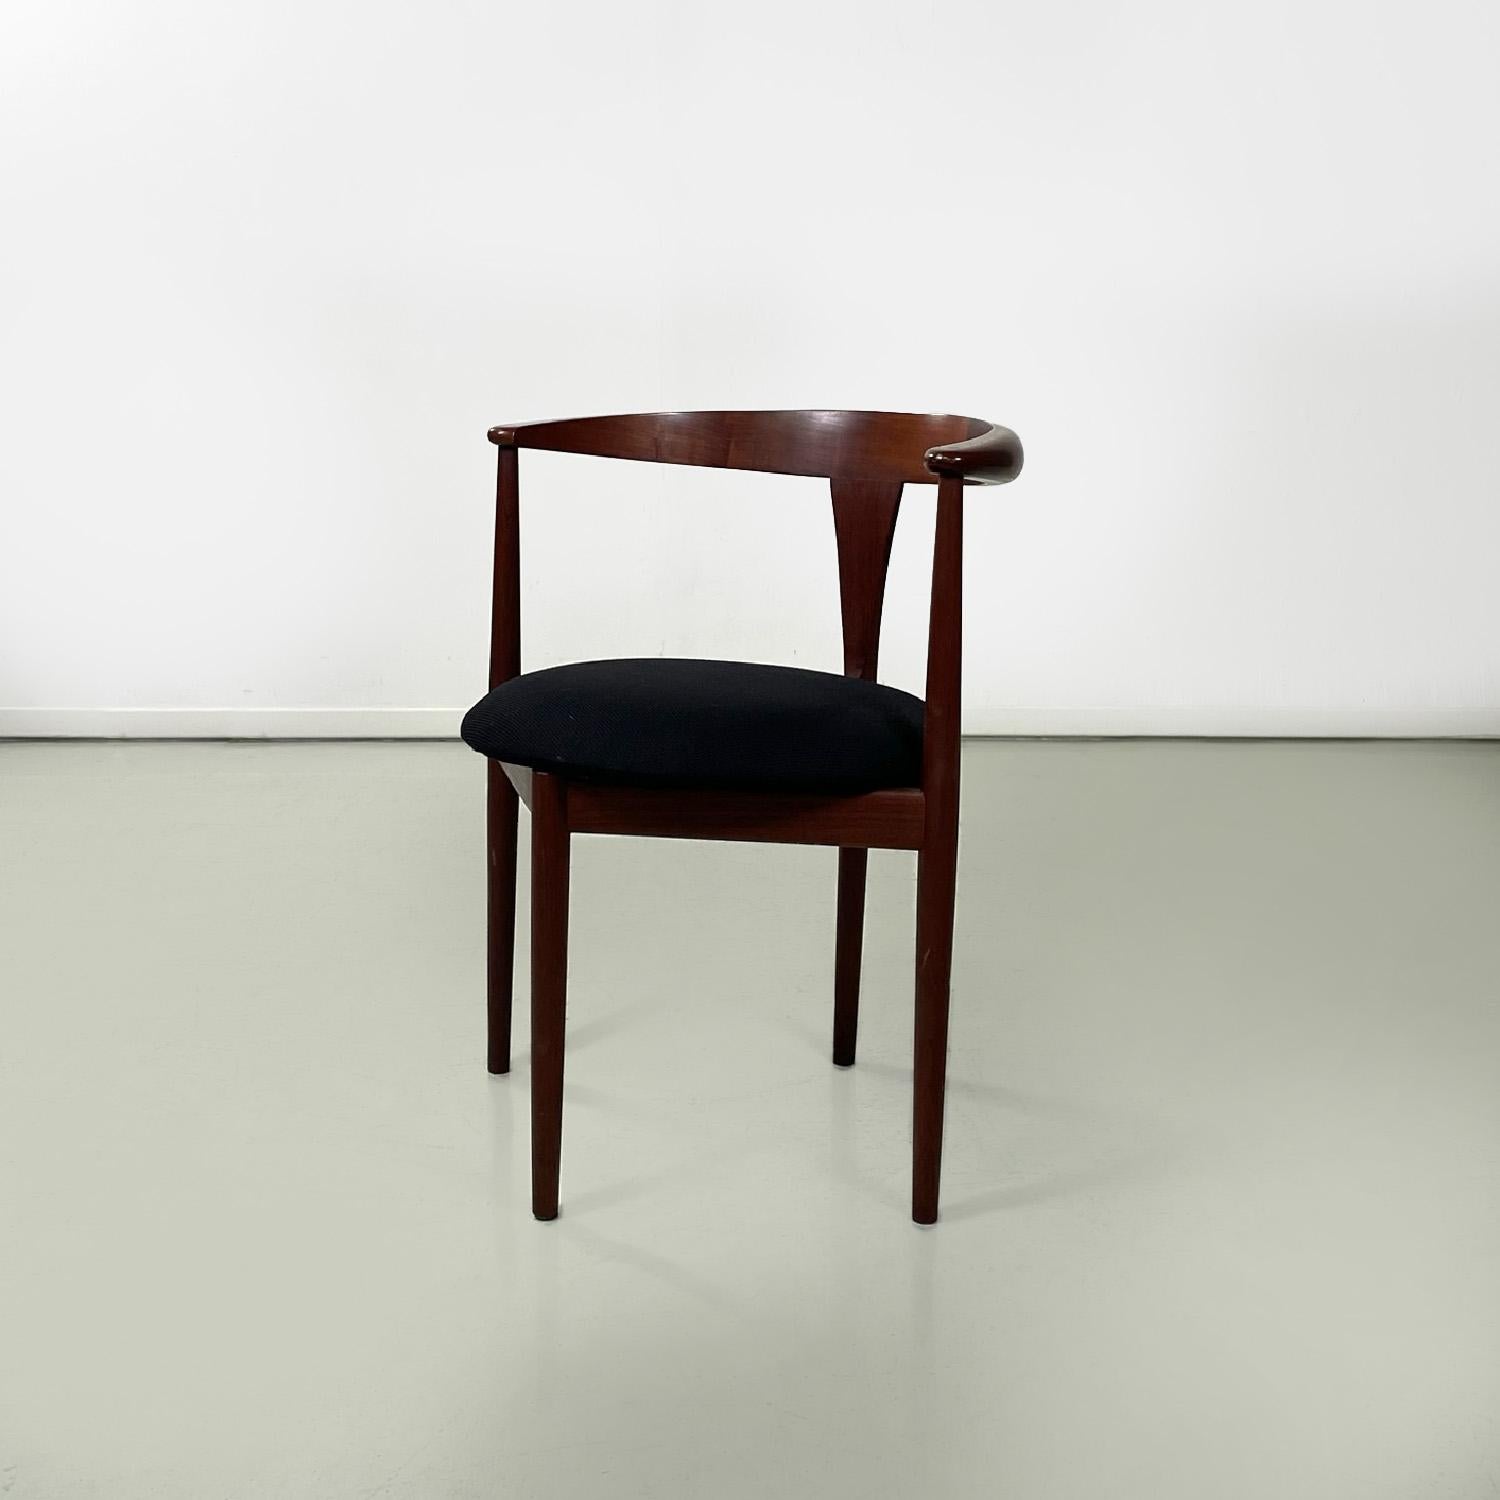 Italian Solid teak wood chairs by Vilhelm Wohlert for Paul Jeppesen Mobelfabrik, 1960s